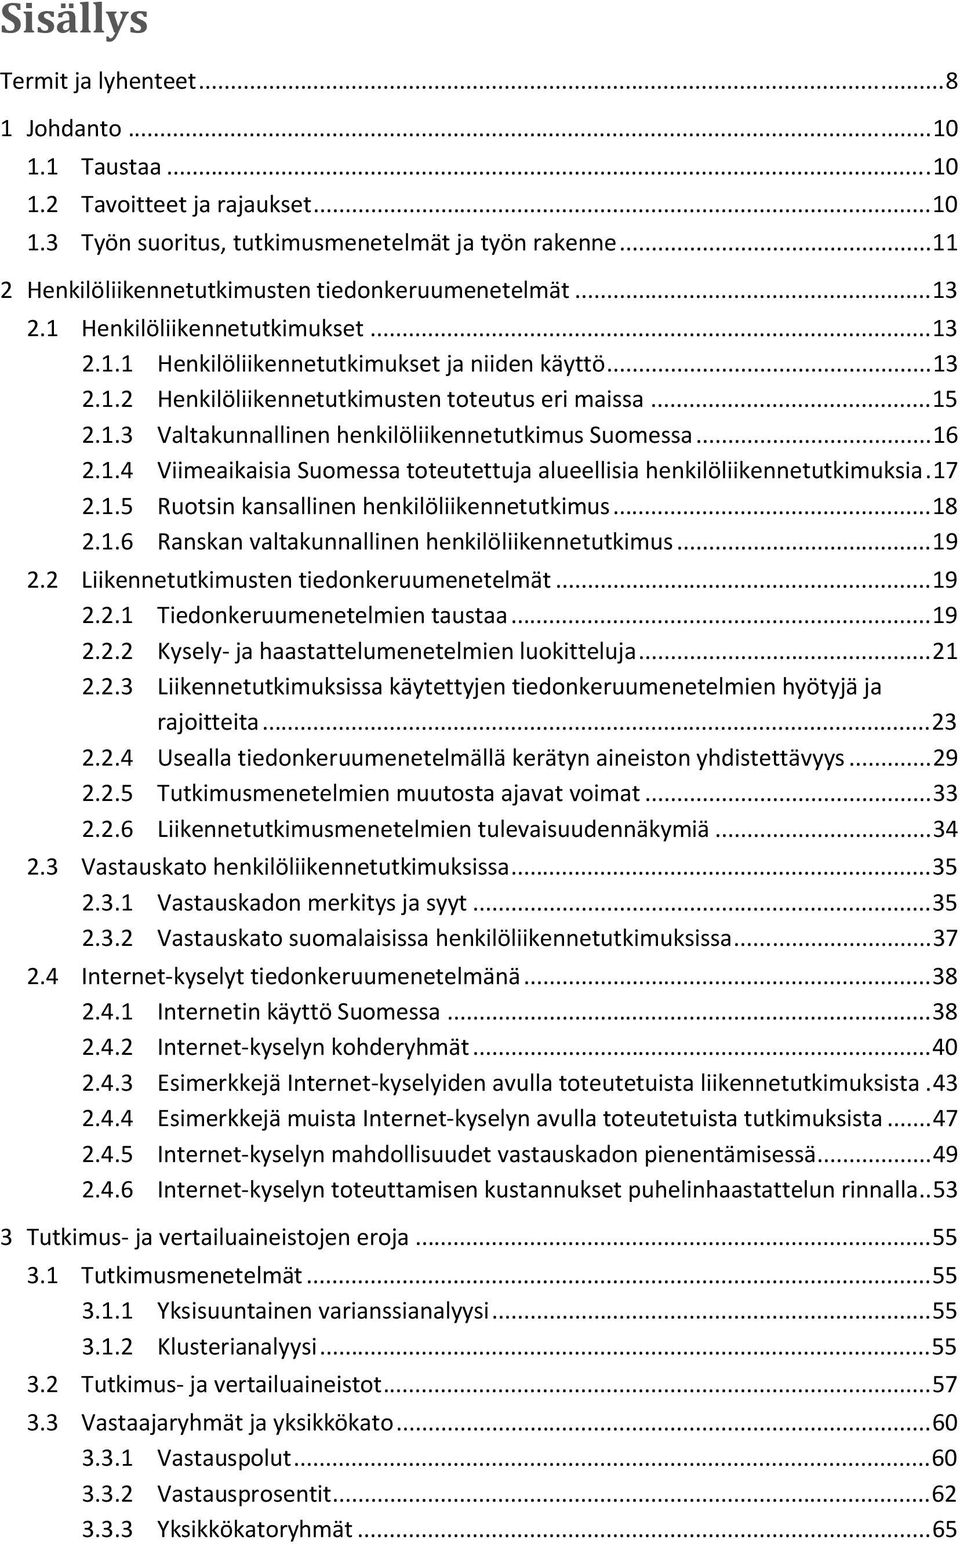 .. 15 2.1.3 Valtakunnallinen henkilöliikennetutkimus Suomessa... 16 2.1.4 Viimeaikaisia Suomessa toteutettuja alueellisia henkilöliikennetutkimuksia. 17 2.1.5 Ruotsin kansallinen henkilöliikennetutkimus.